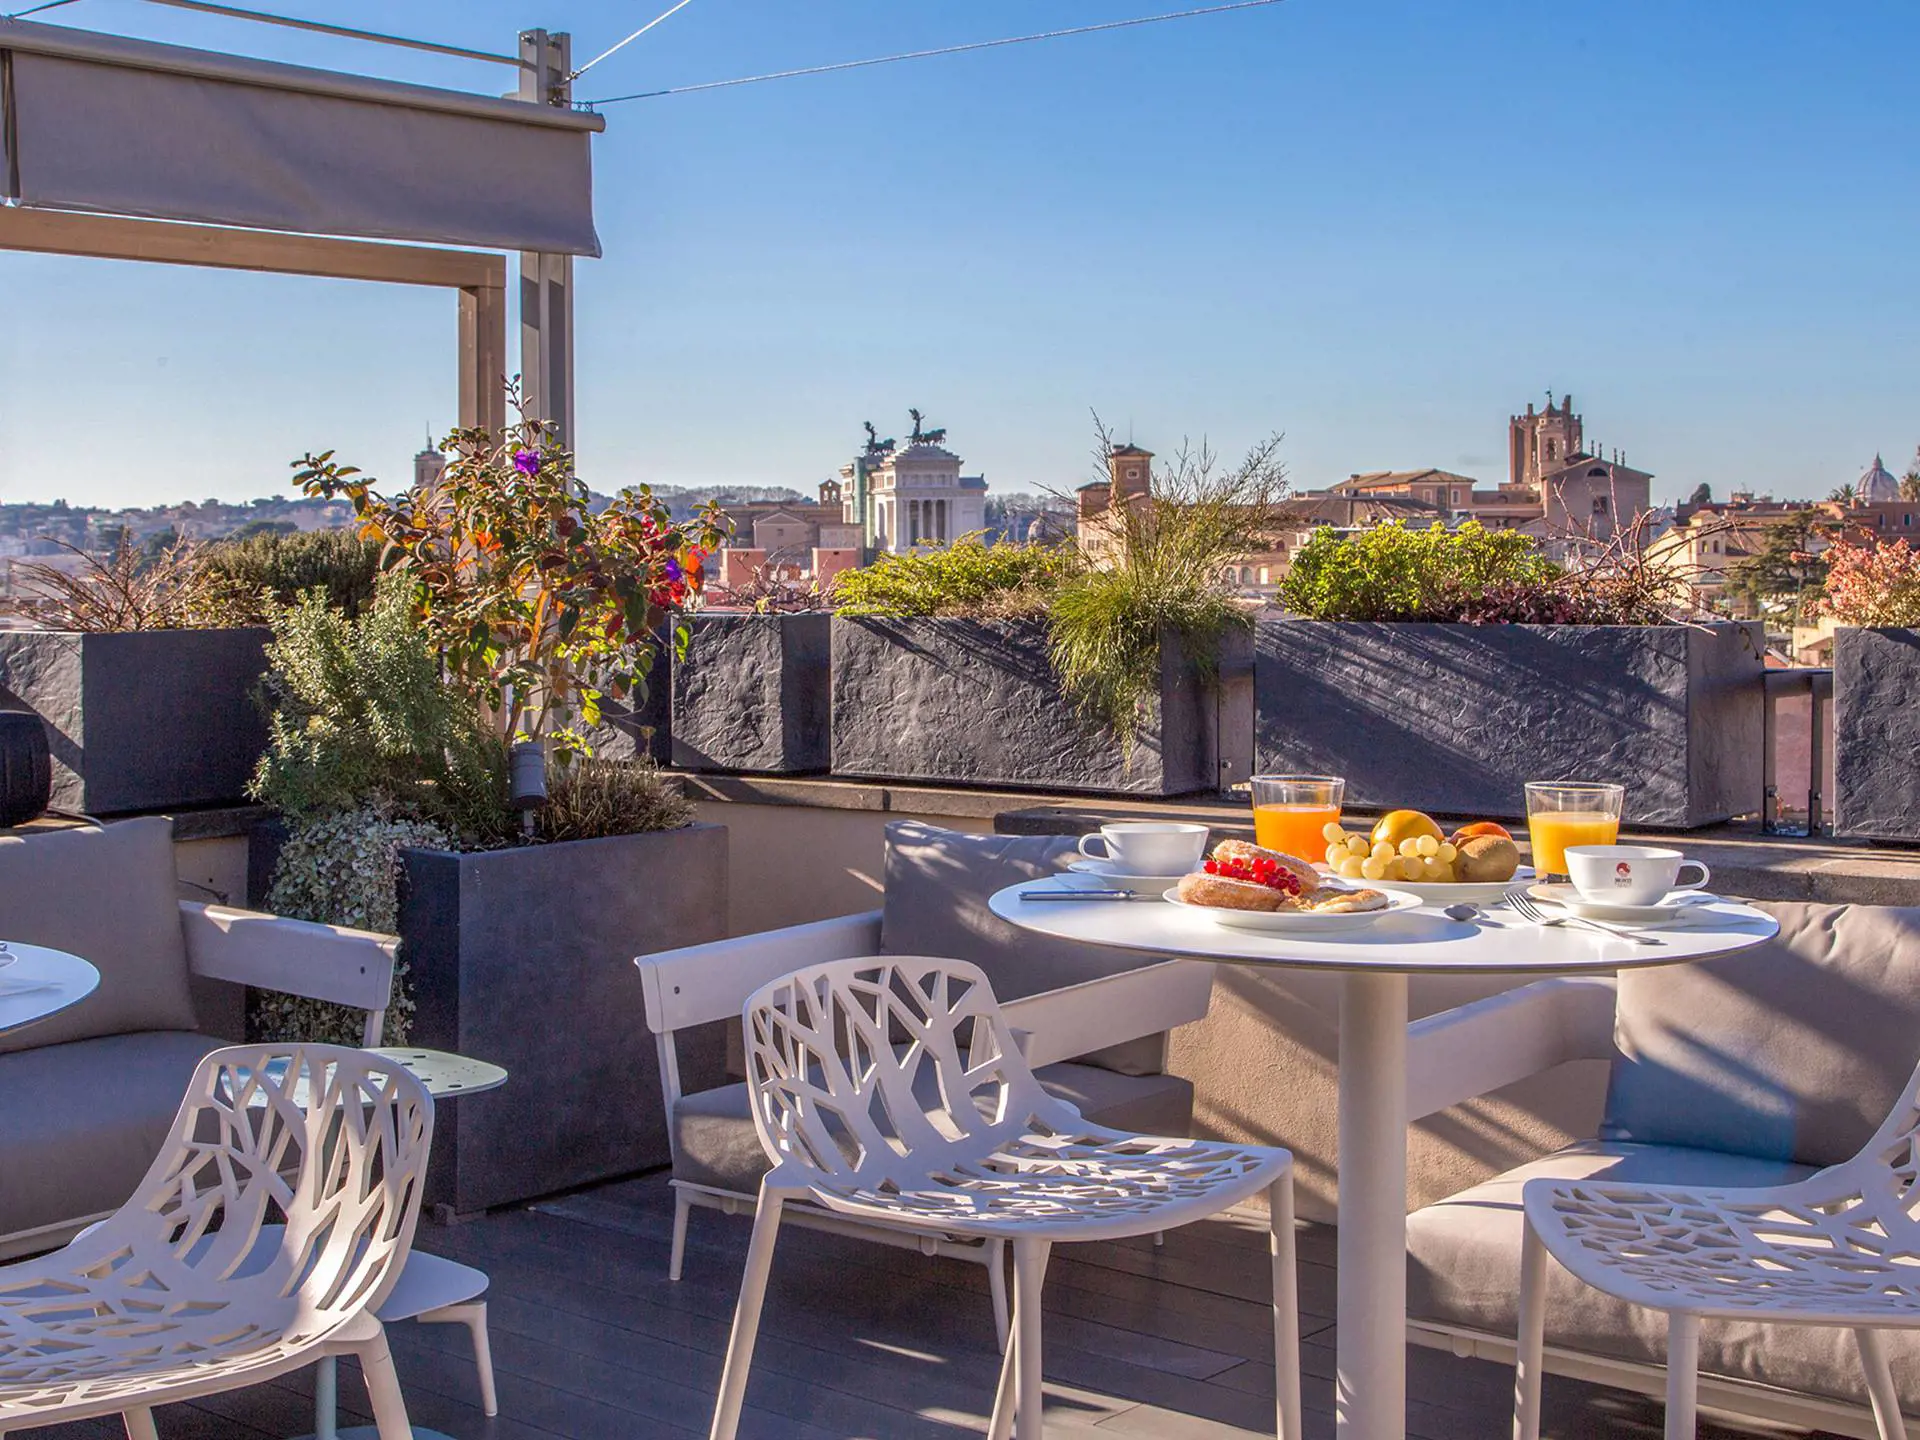 Njut av frukost på takterrassen med utsikt över Roms hustak